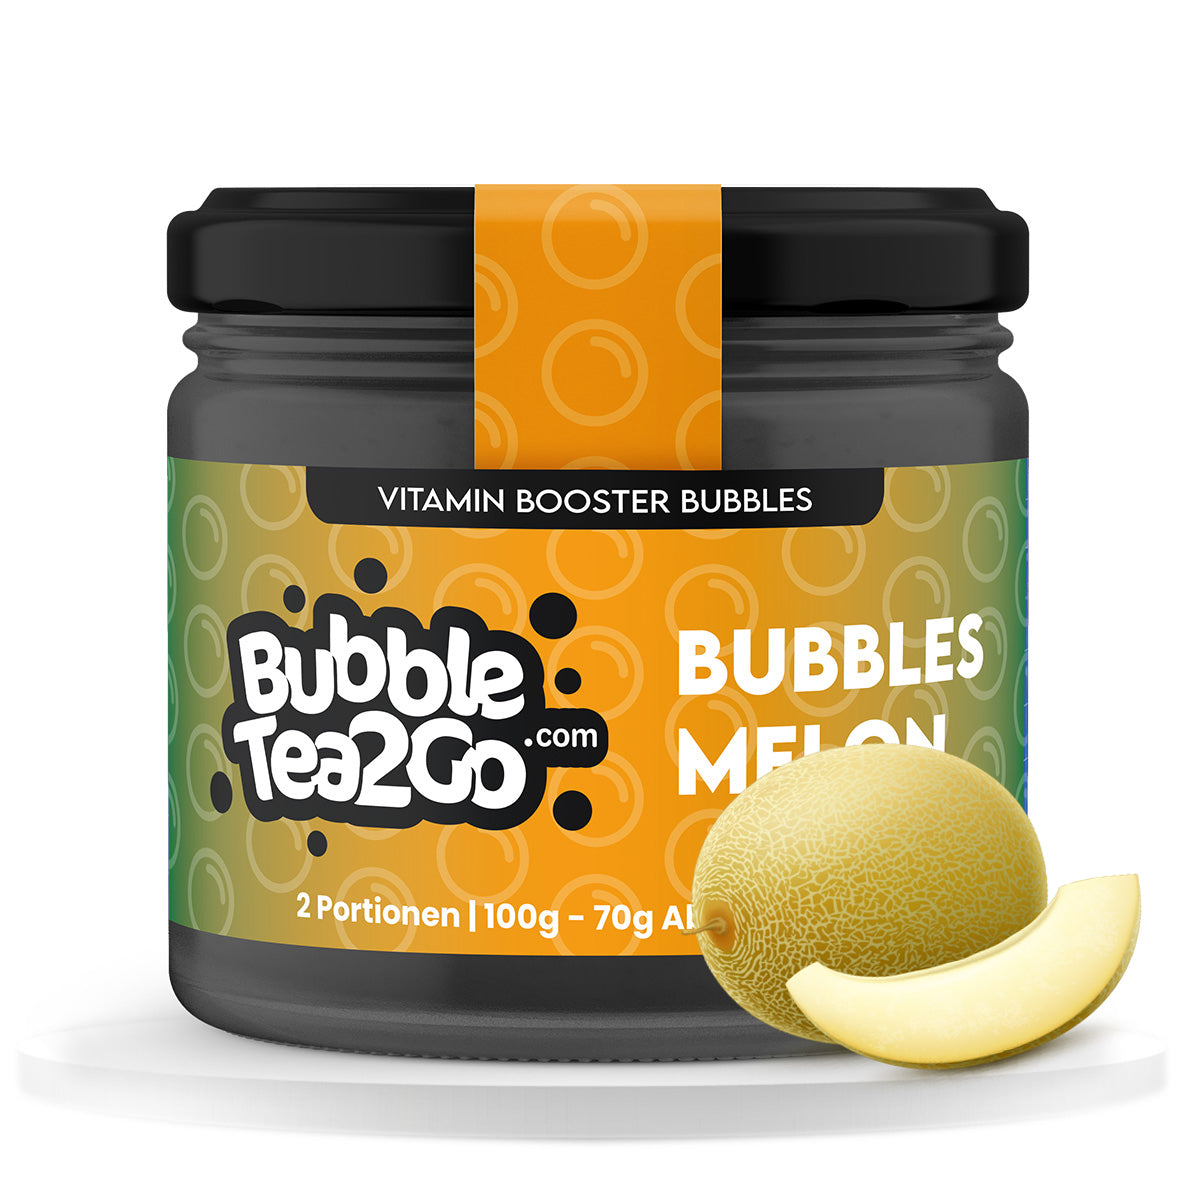 Bubbles - Meloen 2 porties (120g)